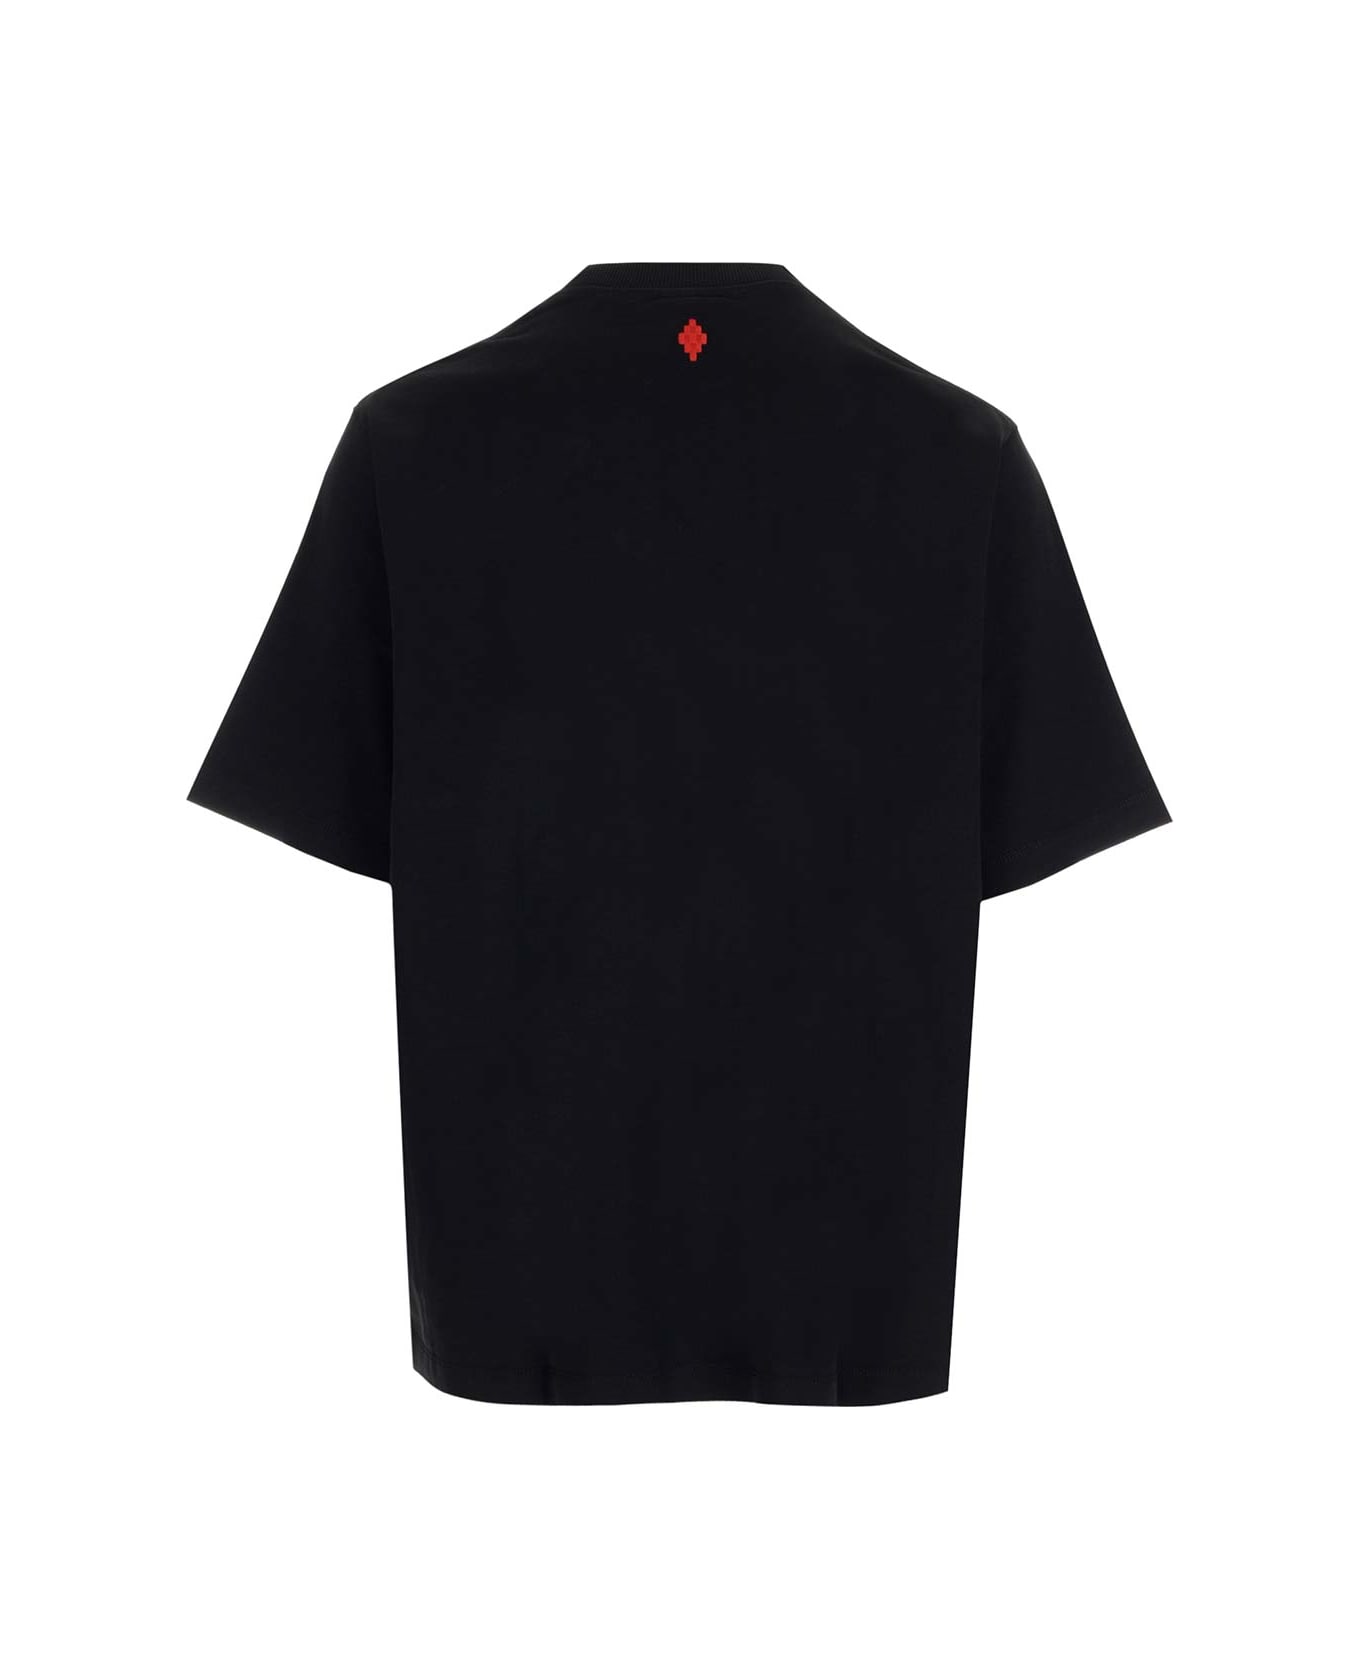 Marcelo Burlon Feathers Necklace Over T-shirt - Black シャツ